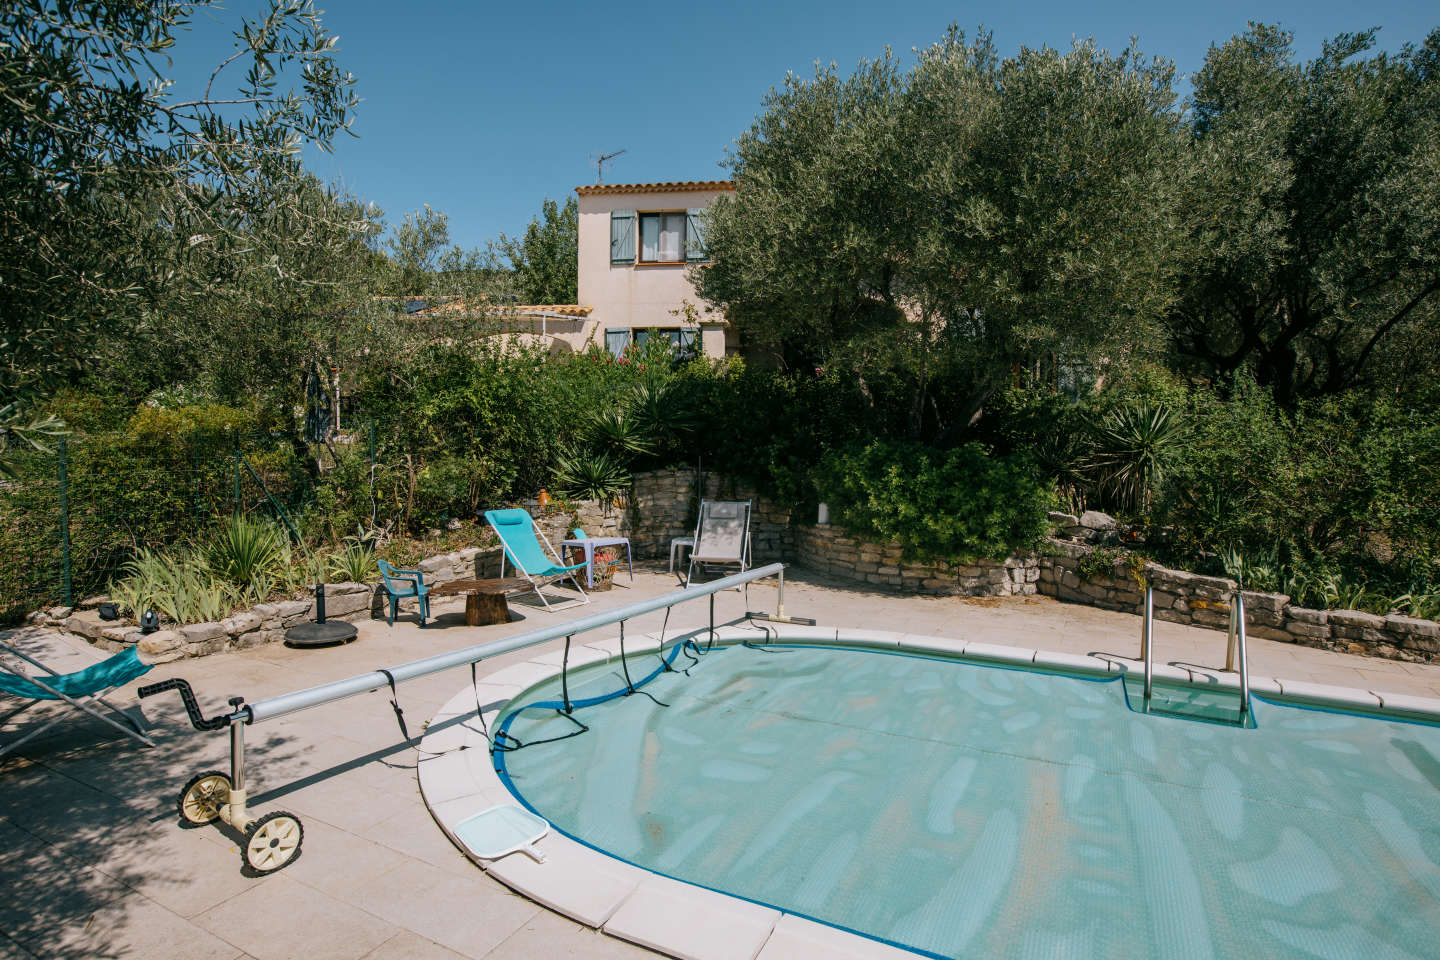 Dans l’Hérault, les propriétaires de piscines restent imperméables aux restrictions liées à la sécheresse